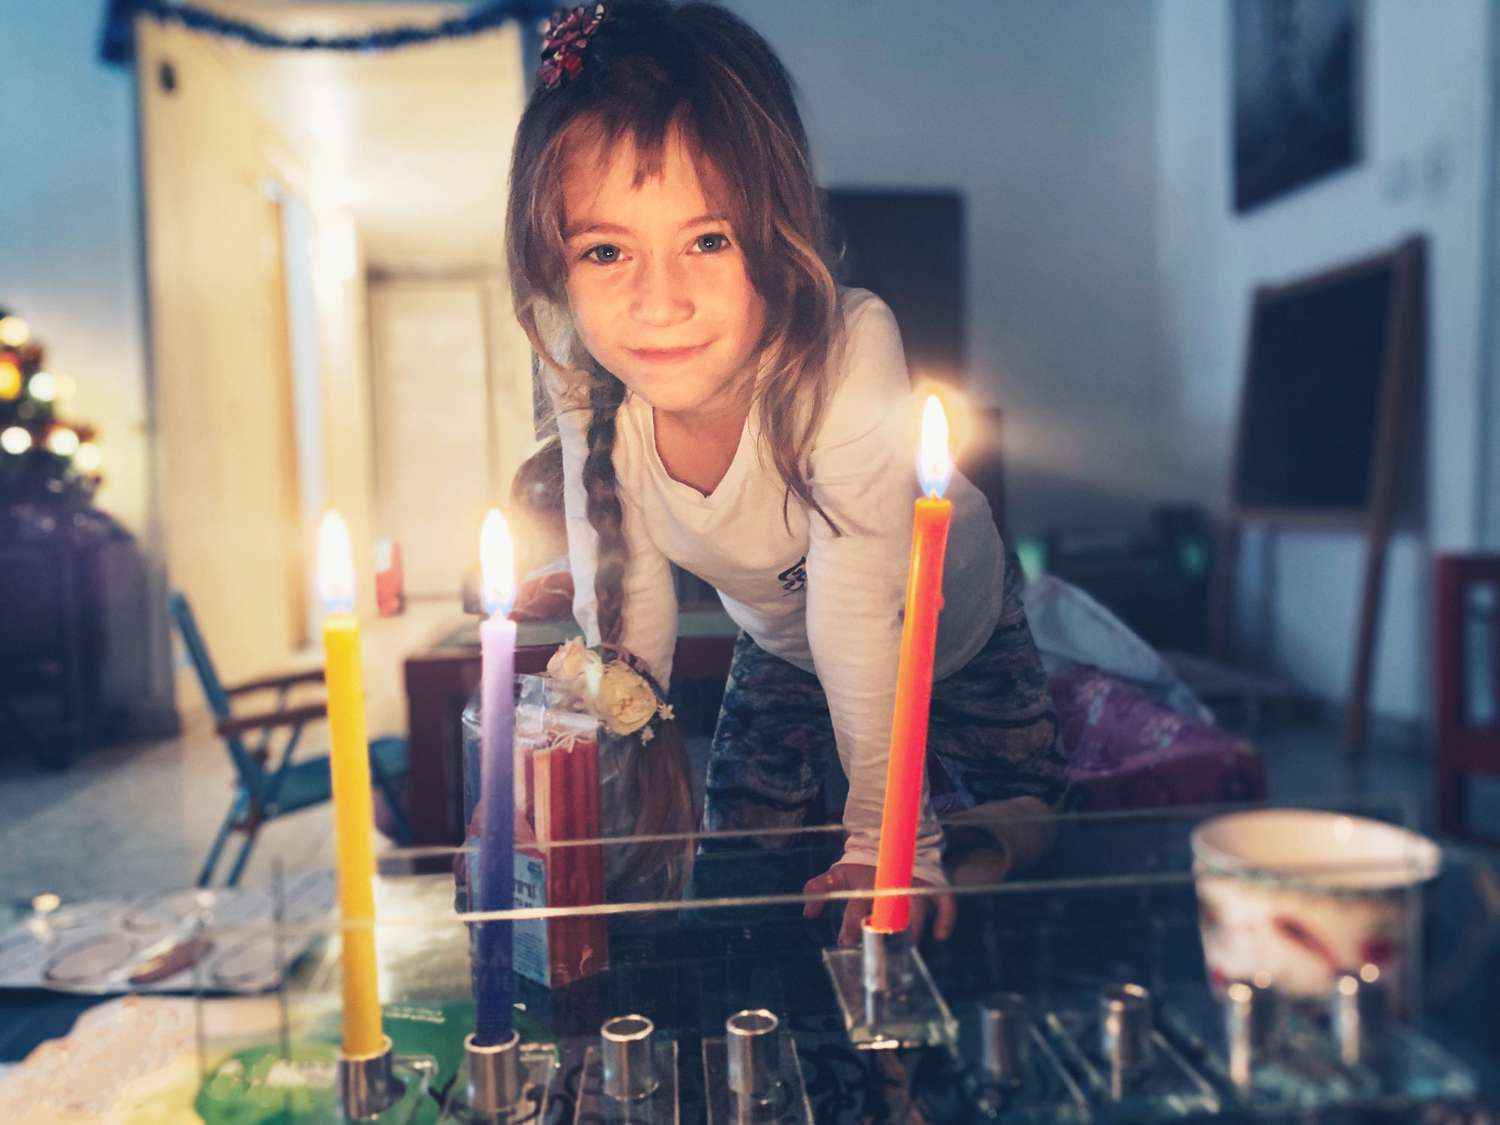 An image of a little girl lighting a menorah.